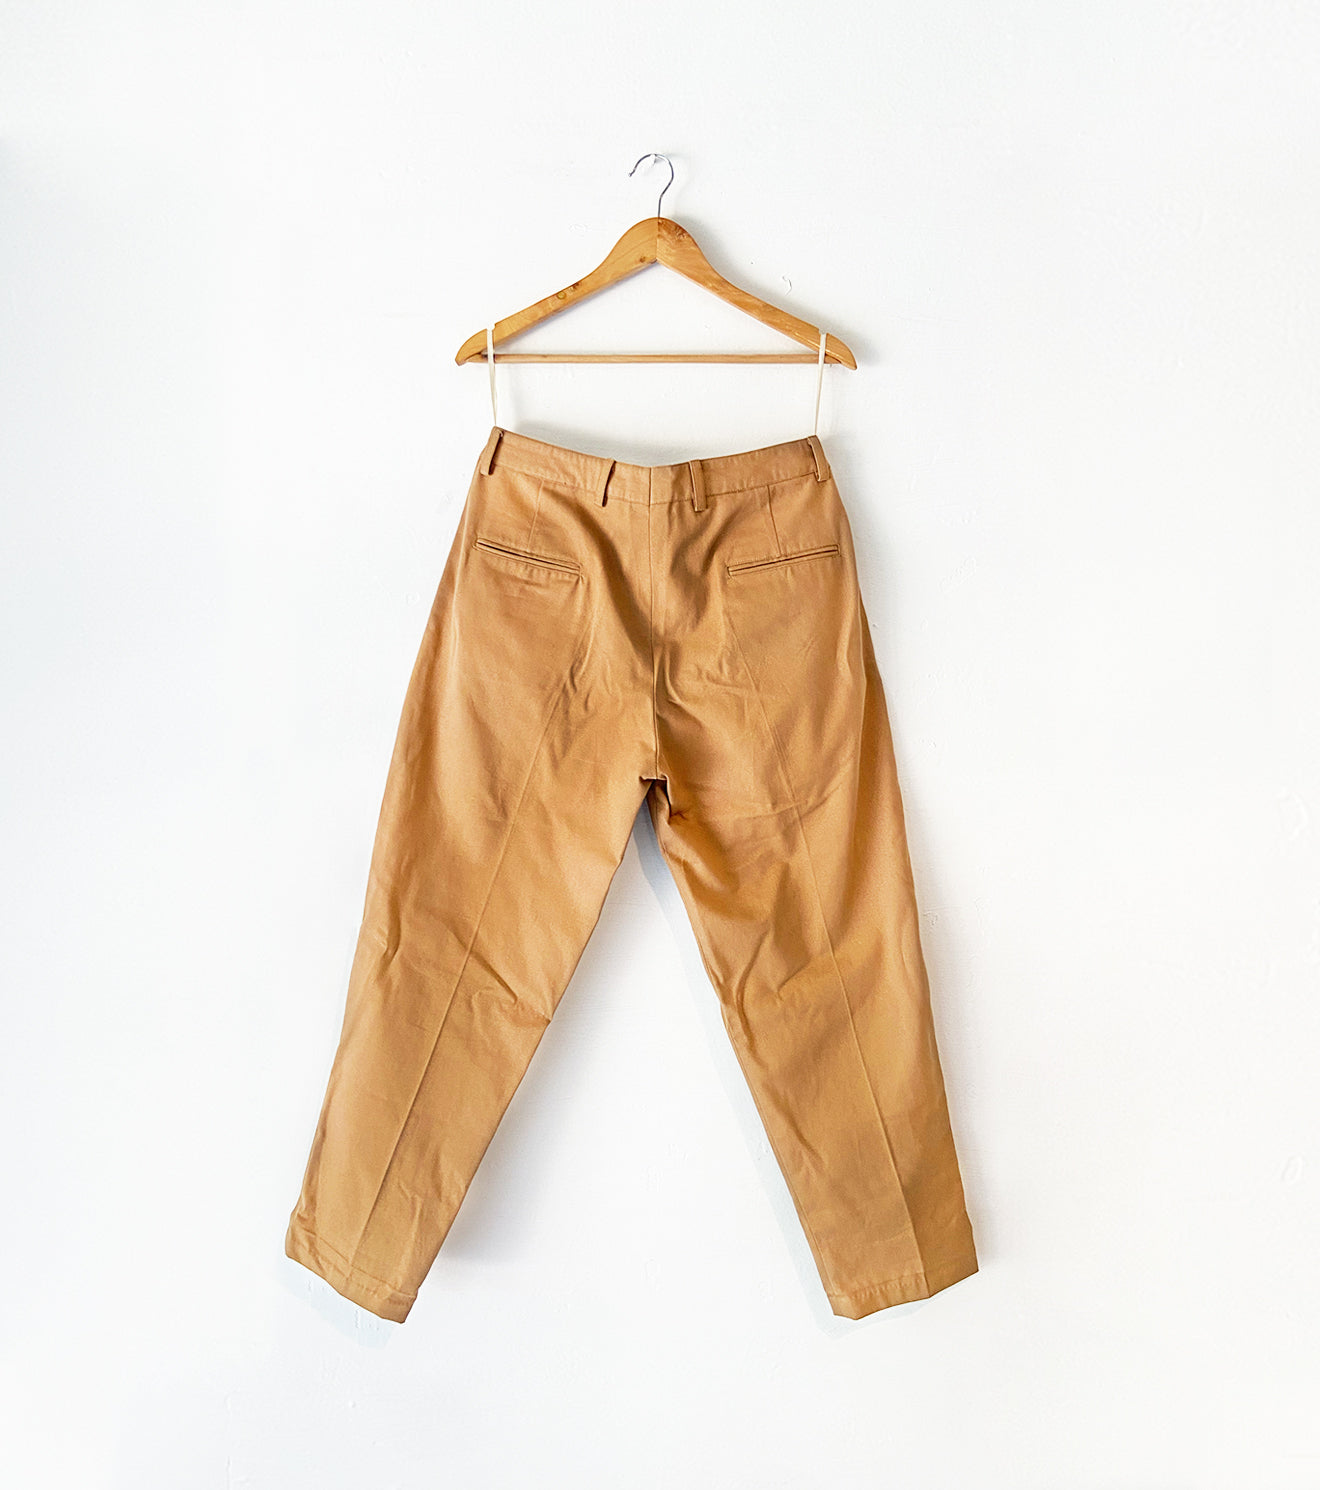 Buy Khaki Trousers  Pants for Men by PARX Online  Ajiocom